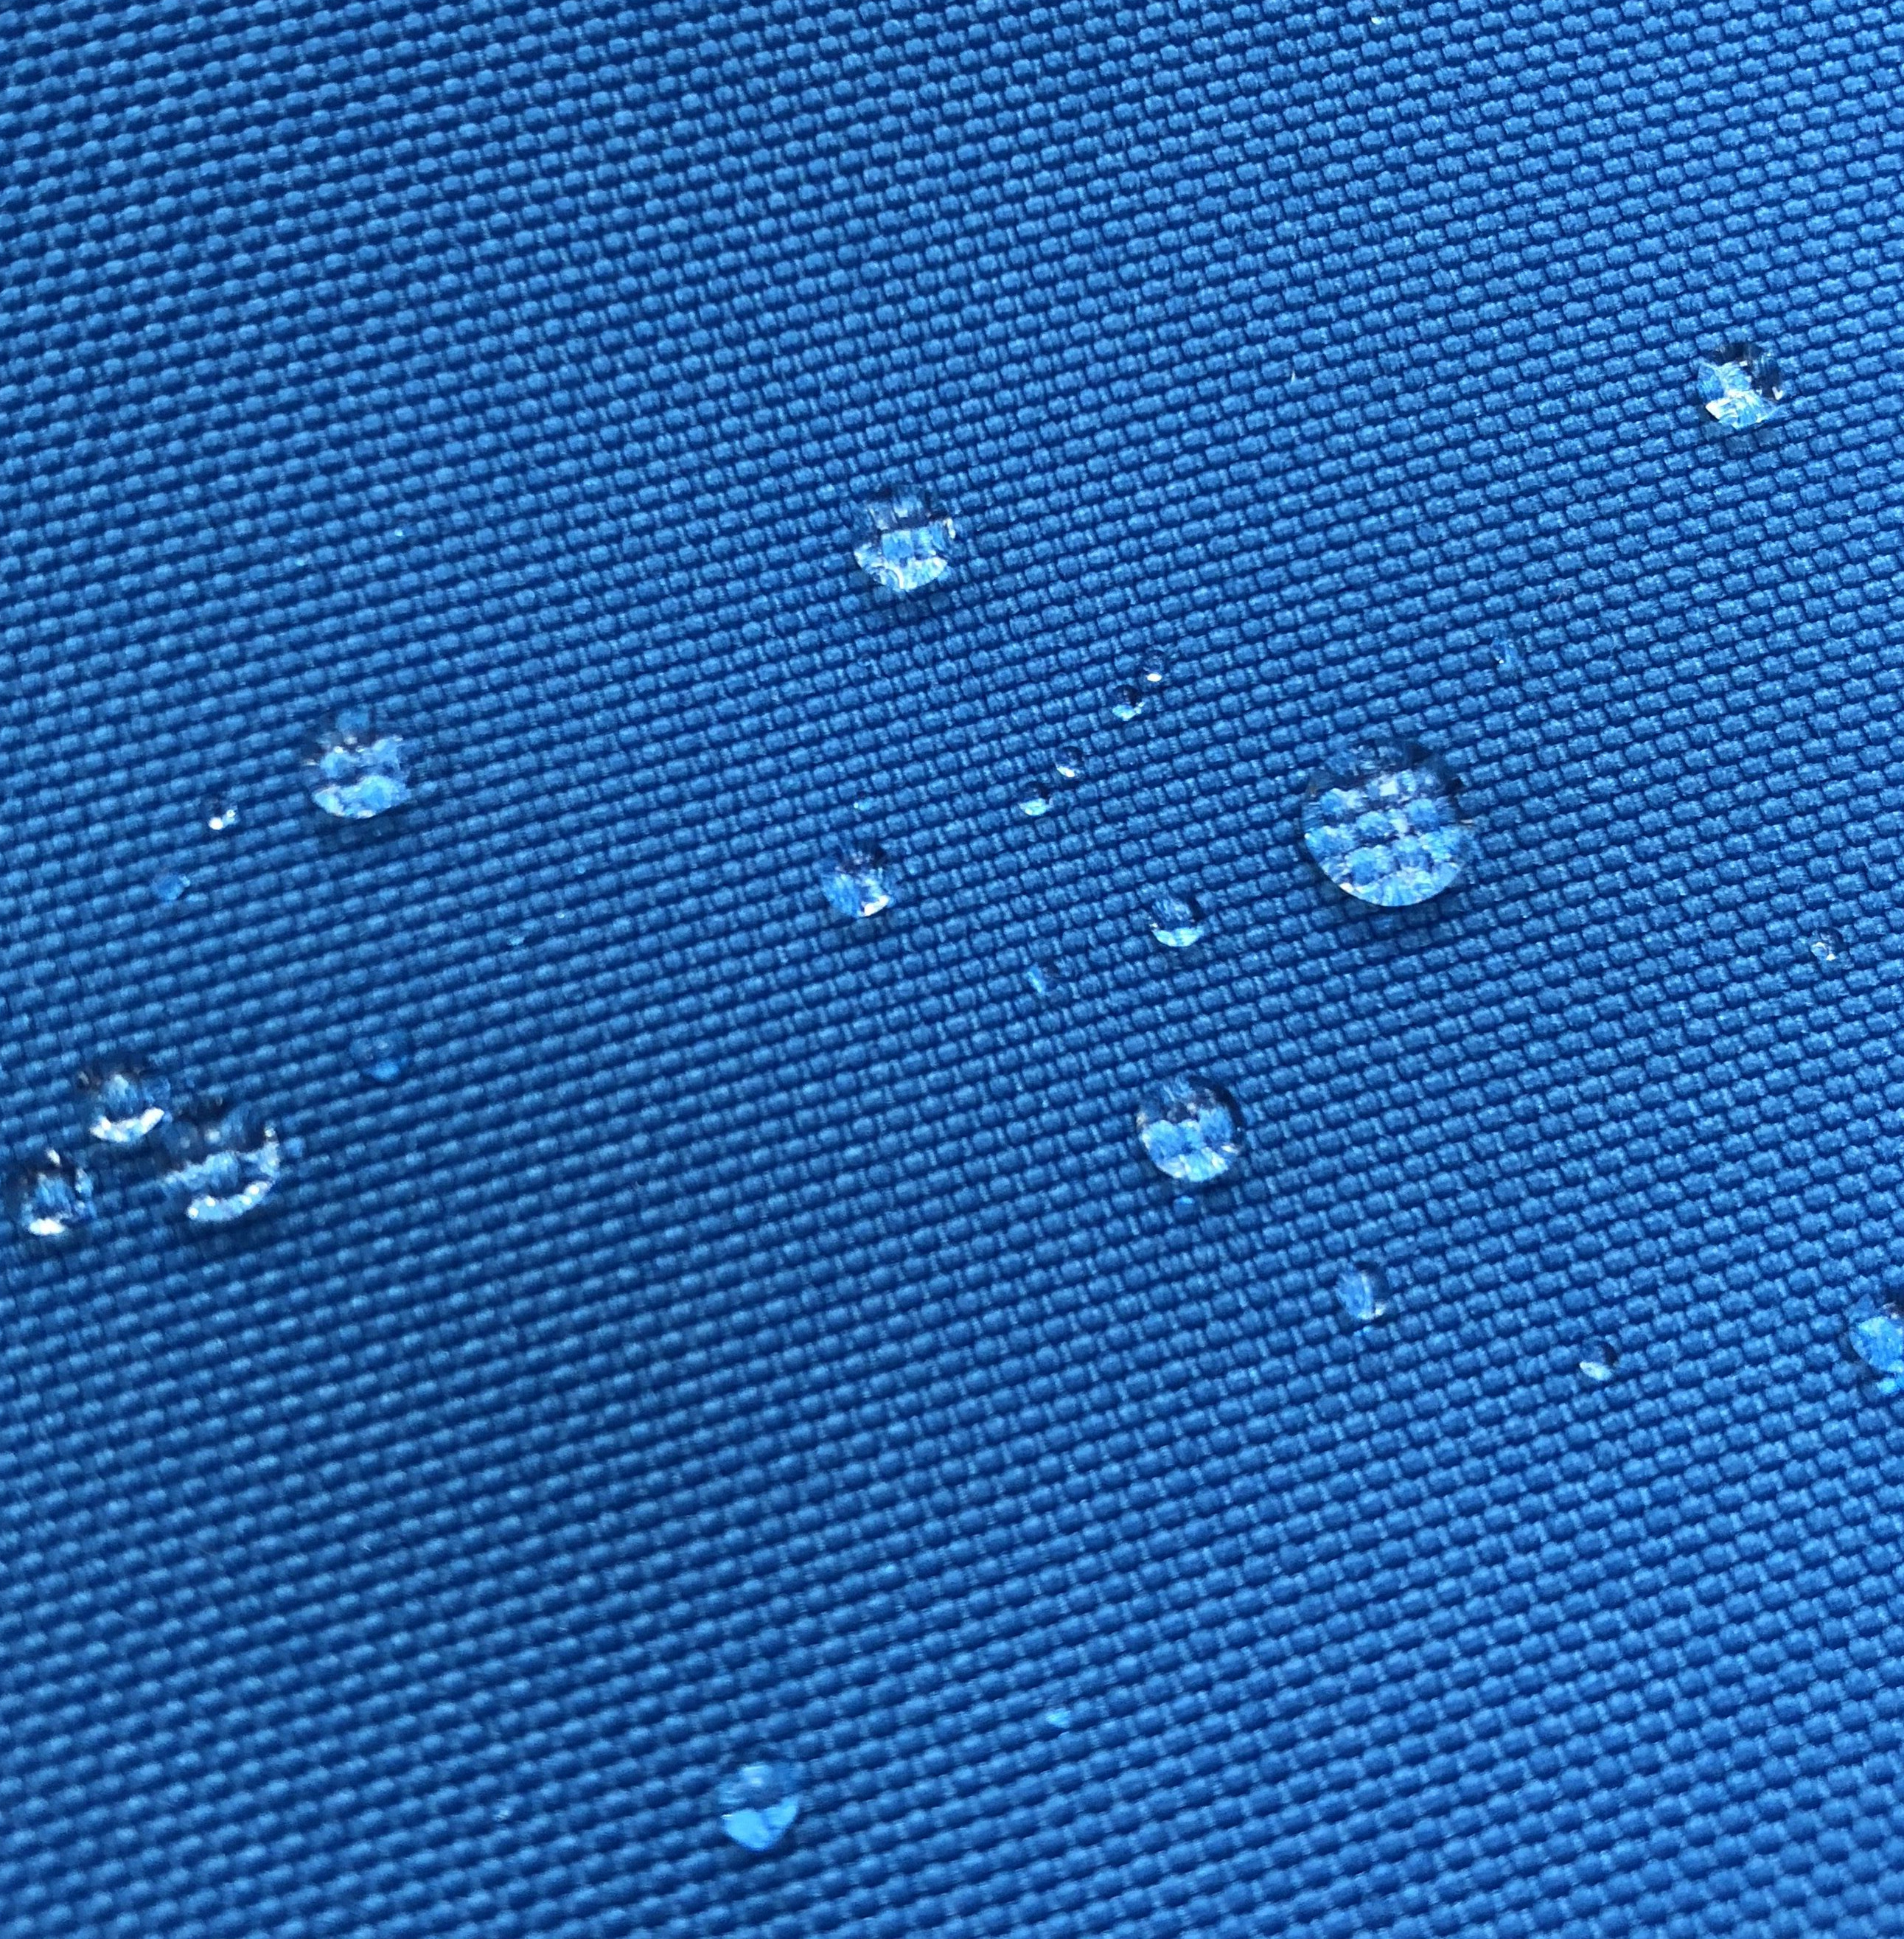 wodoodporna tkanina poliestrowa Oxford 600D z podkładem z PU. Do toreb plecakowych na wędrówki